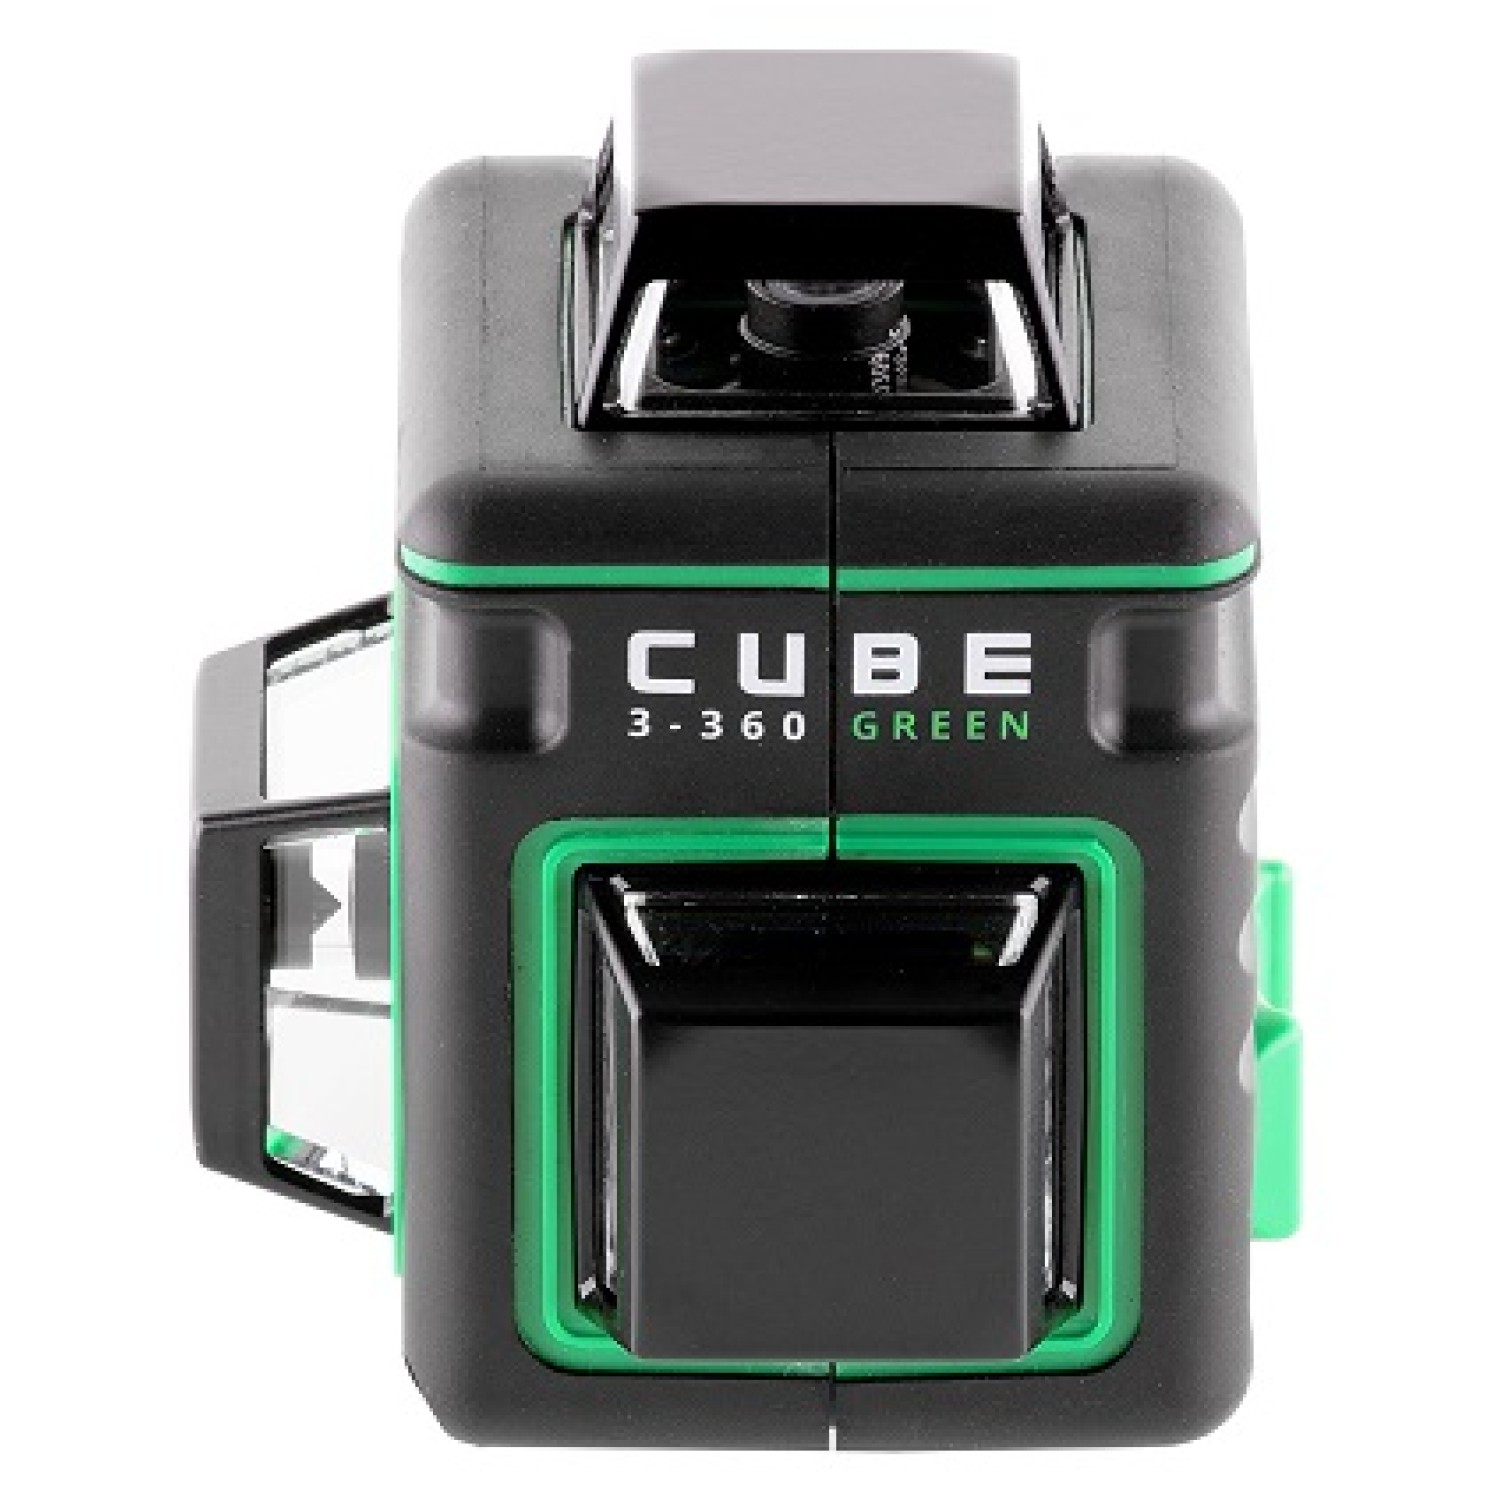 Лазерный уровень cube 360 professional edition. Ada Cube 3-360 Green. Ada Cube 3-360 Basic Edition а00559. Уровень лазерный ada Cube 3-360 Green Ultimate Edition. Лазерный уровень ada Cube 360 Basic Edition.